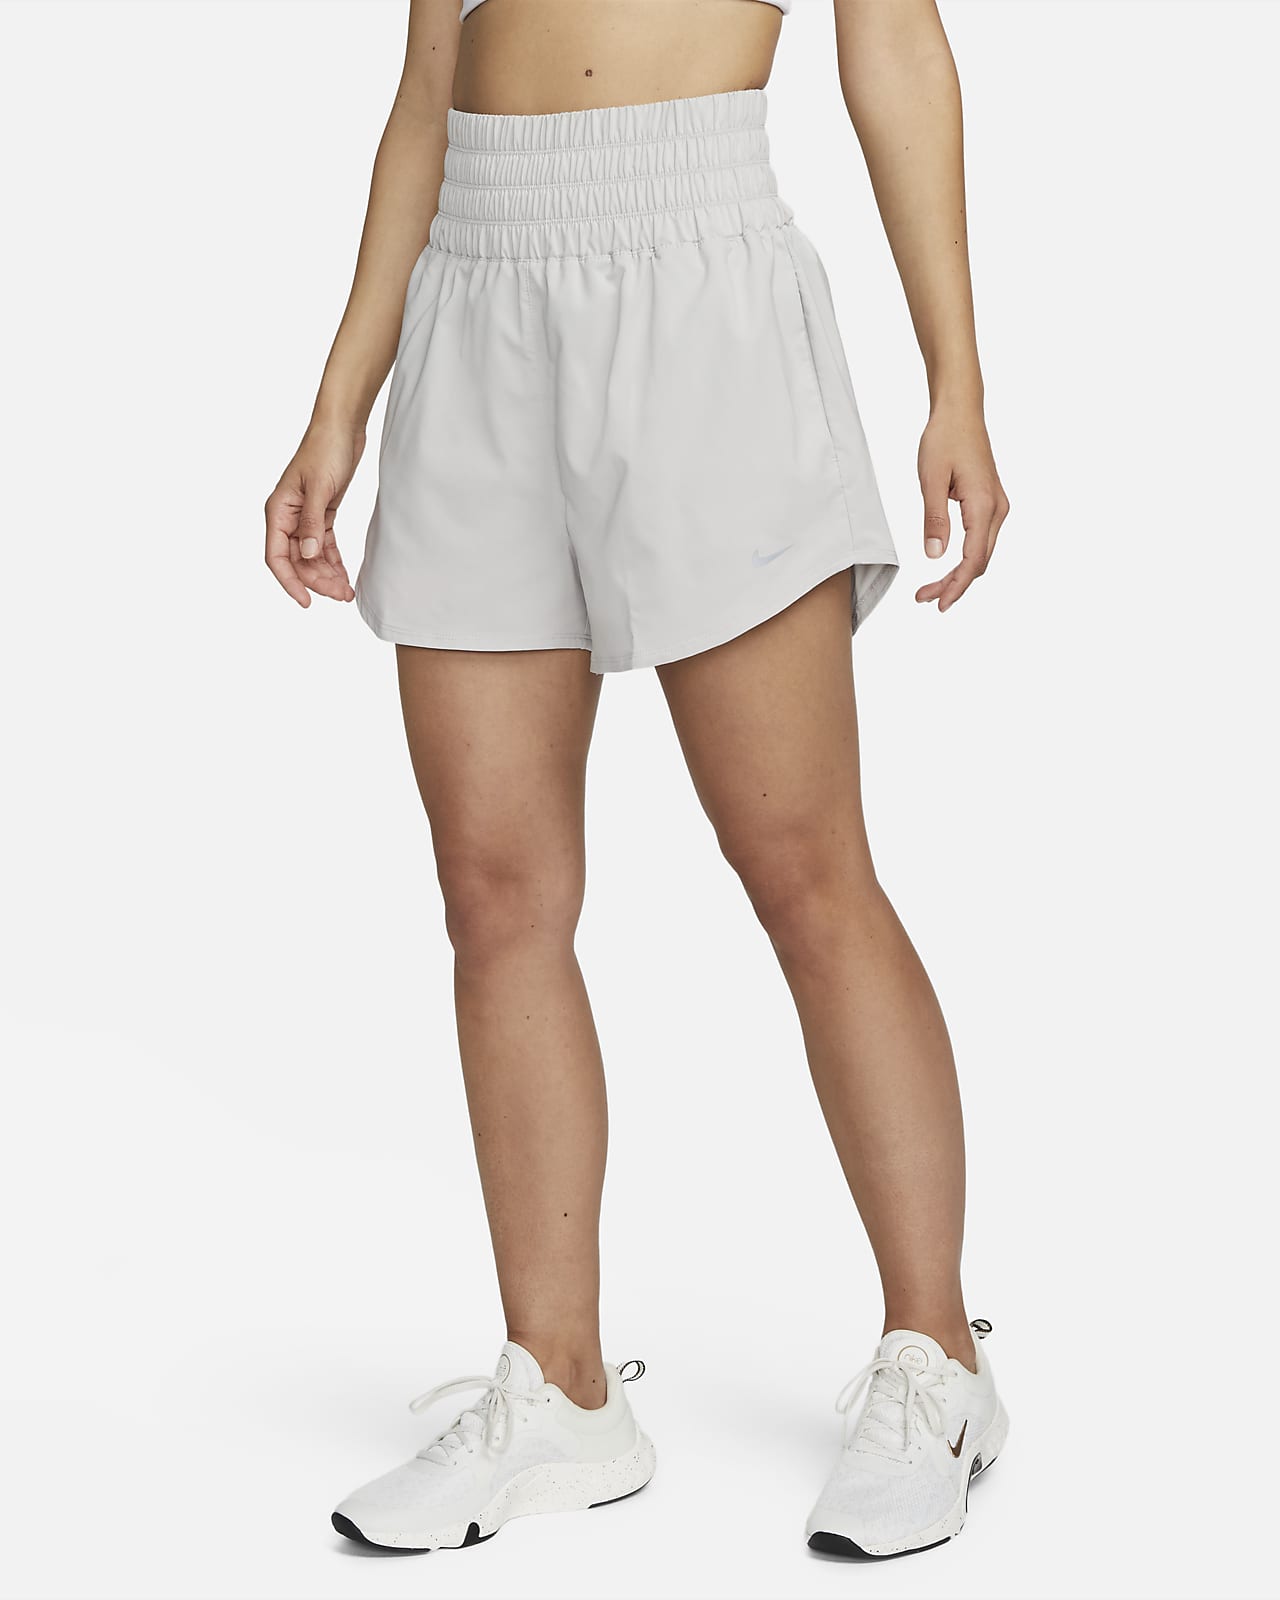 Shorts con forro de ropa interior Dri-FIT de tiro ultraalto de 8 cm para mujer Nike One